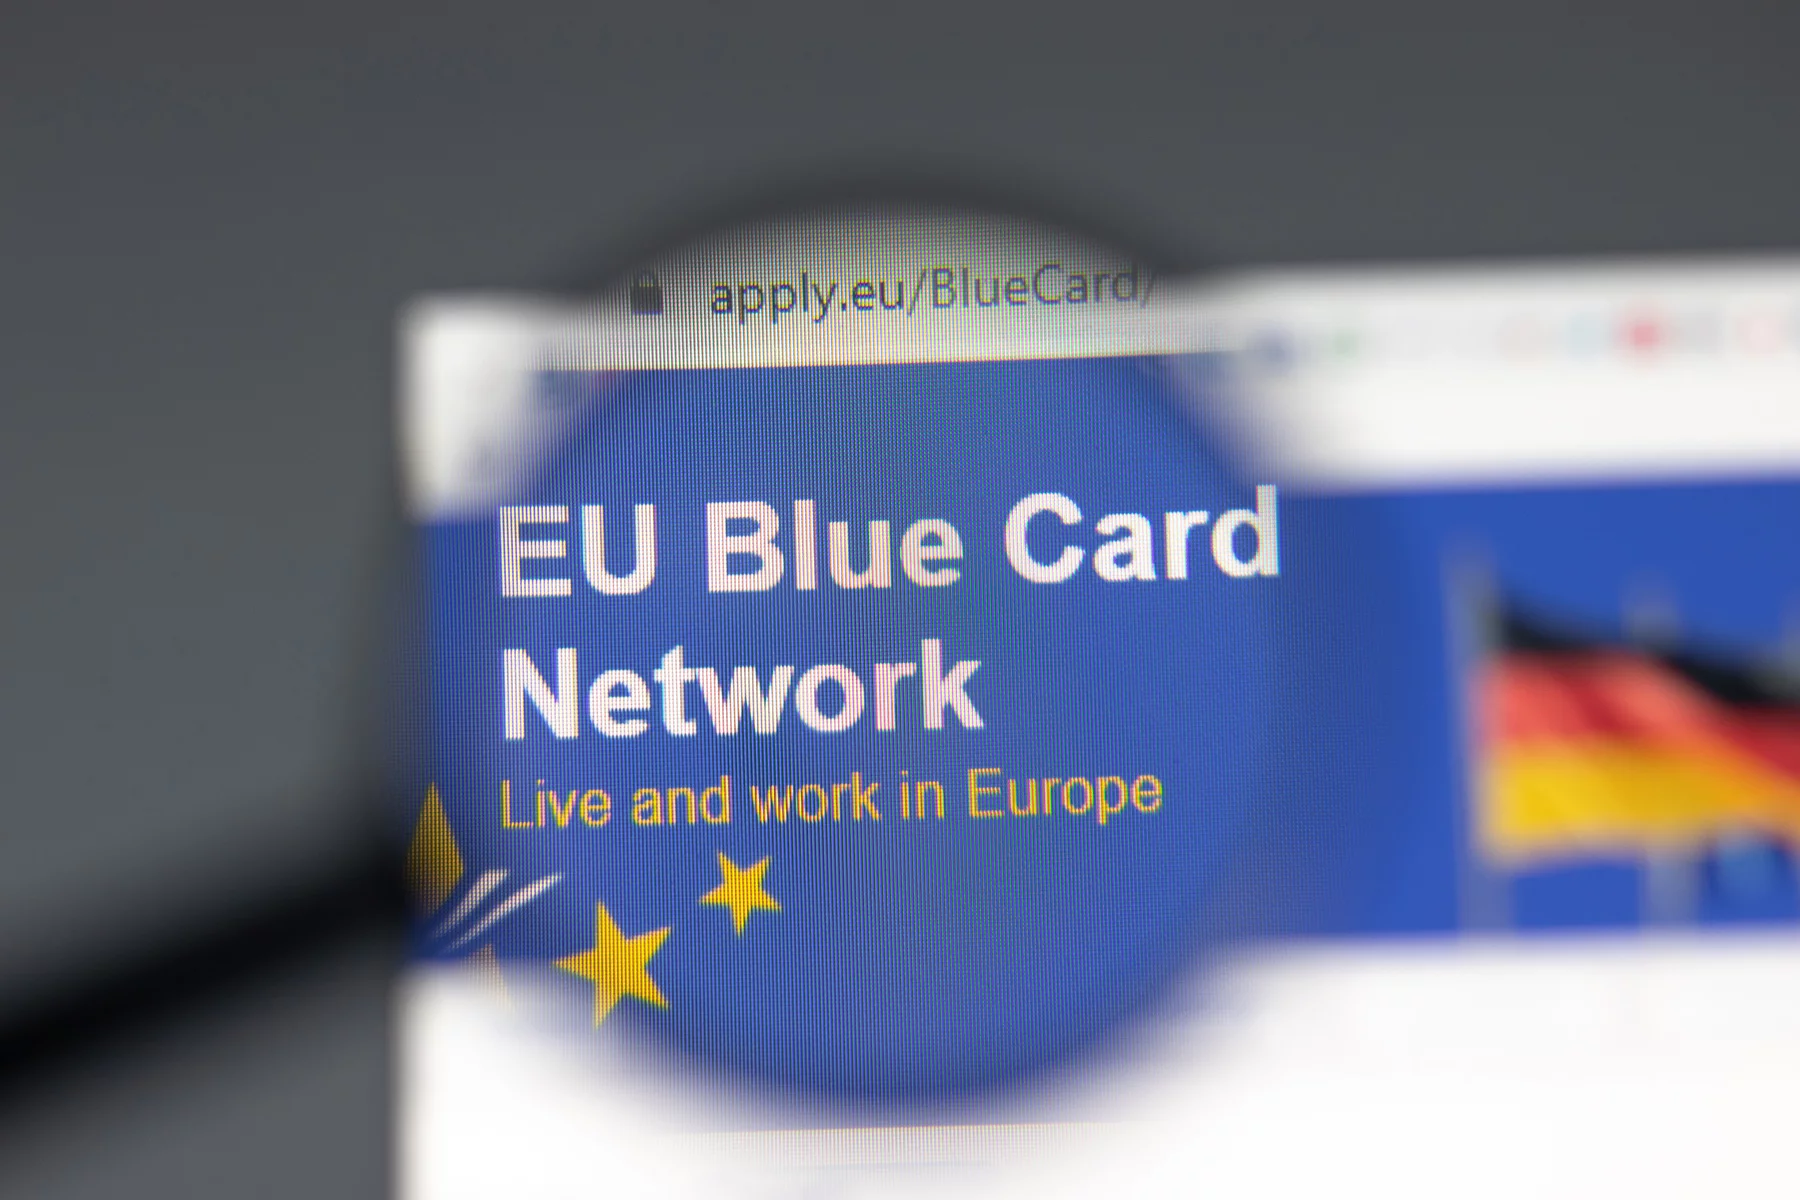 EU Blue Card Network